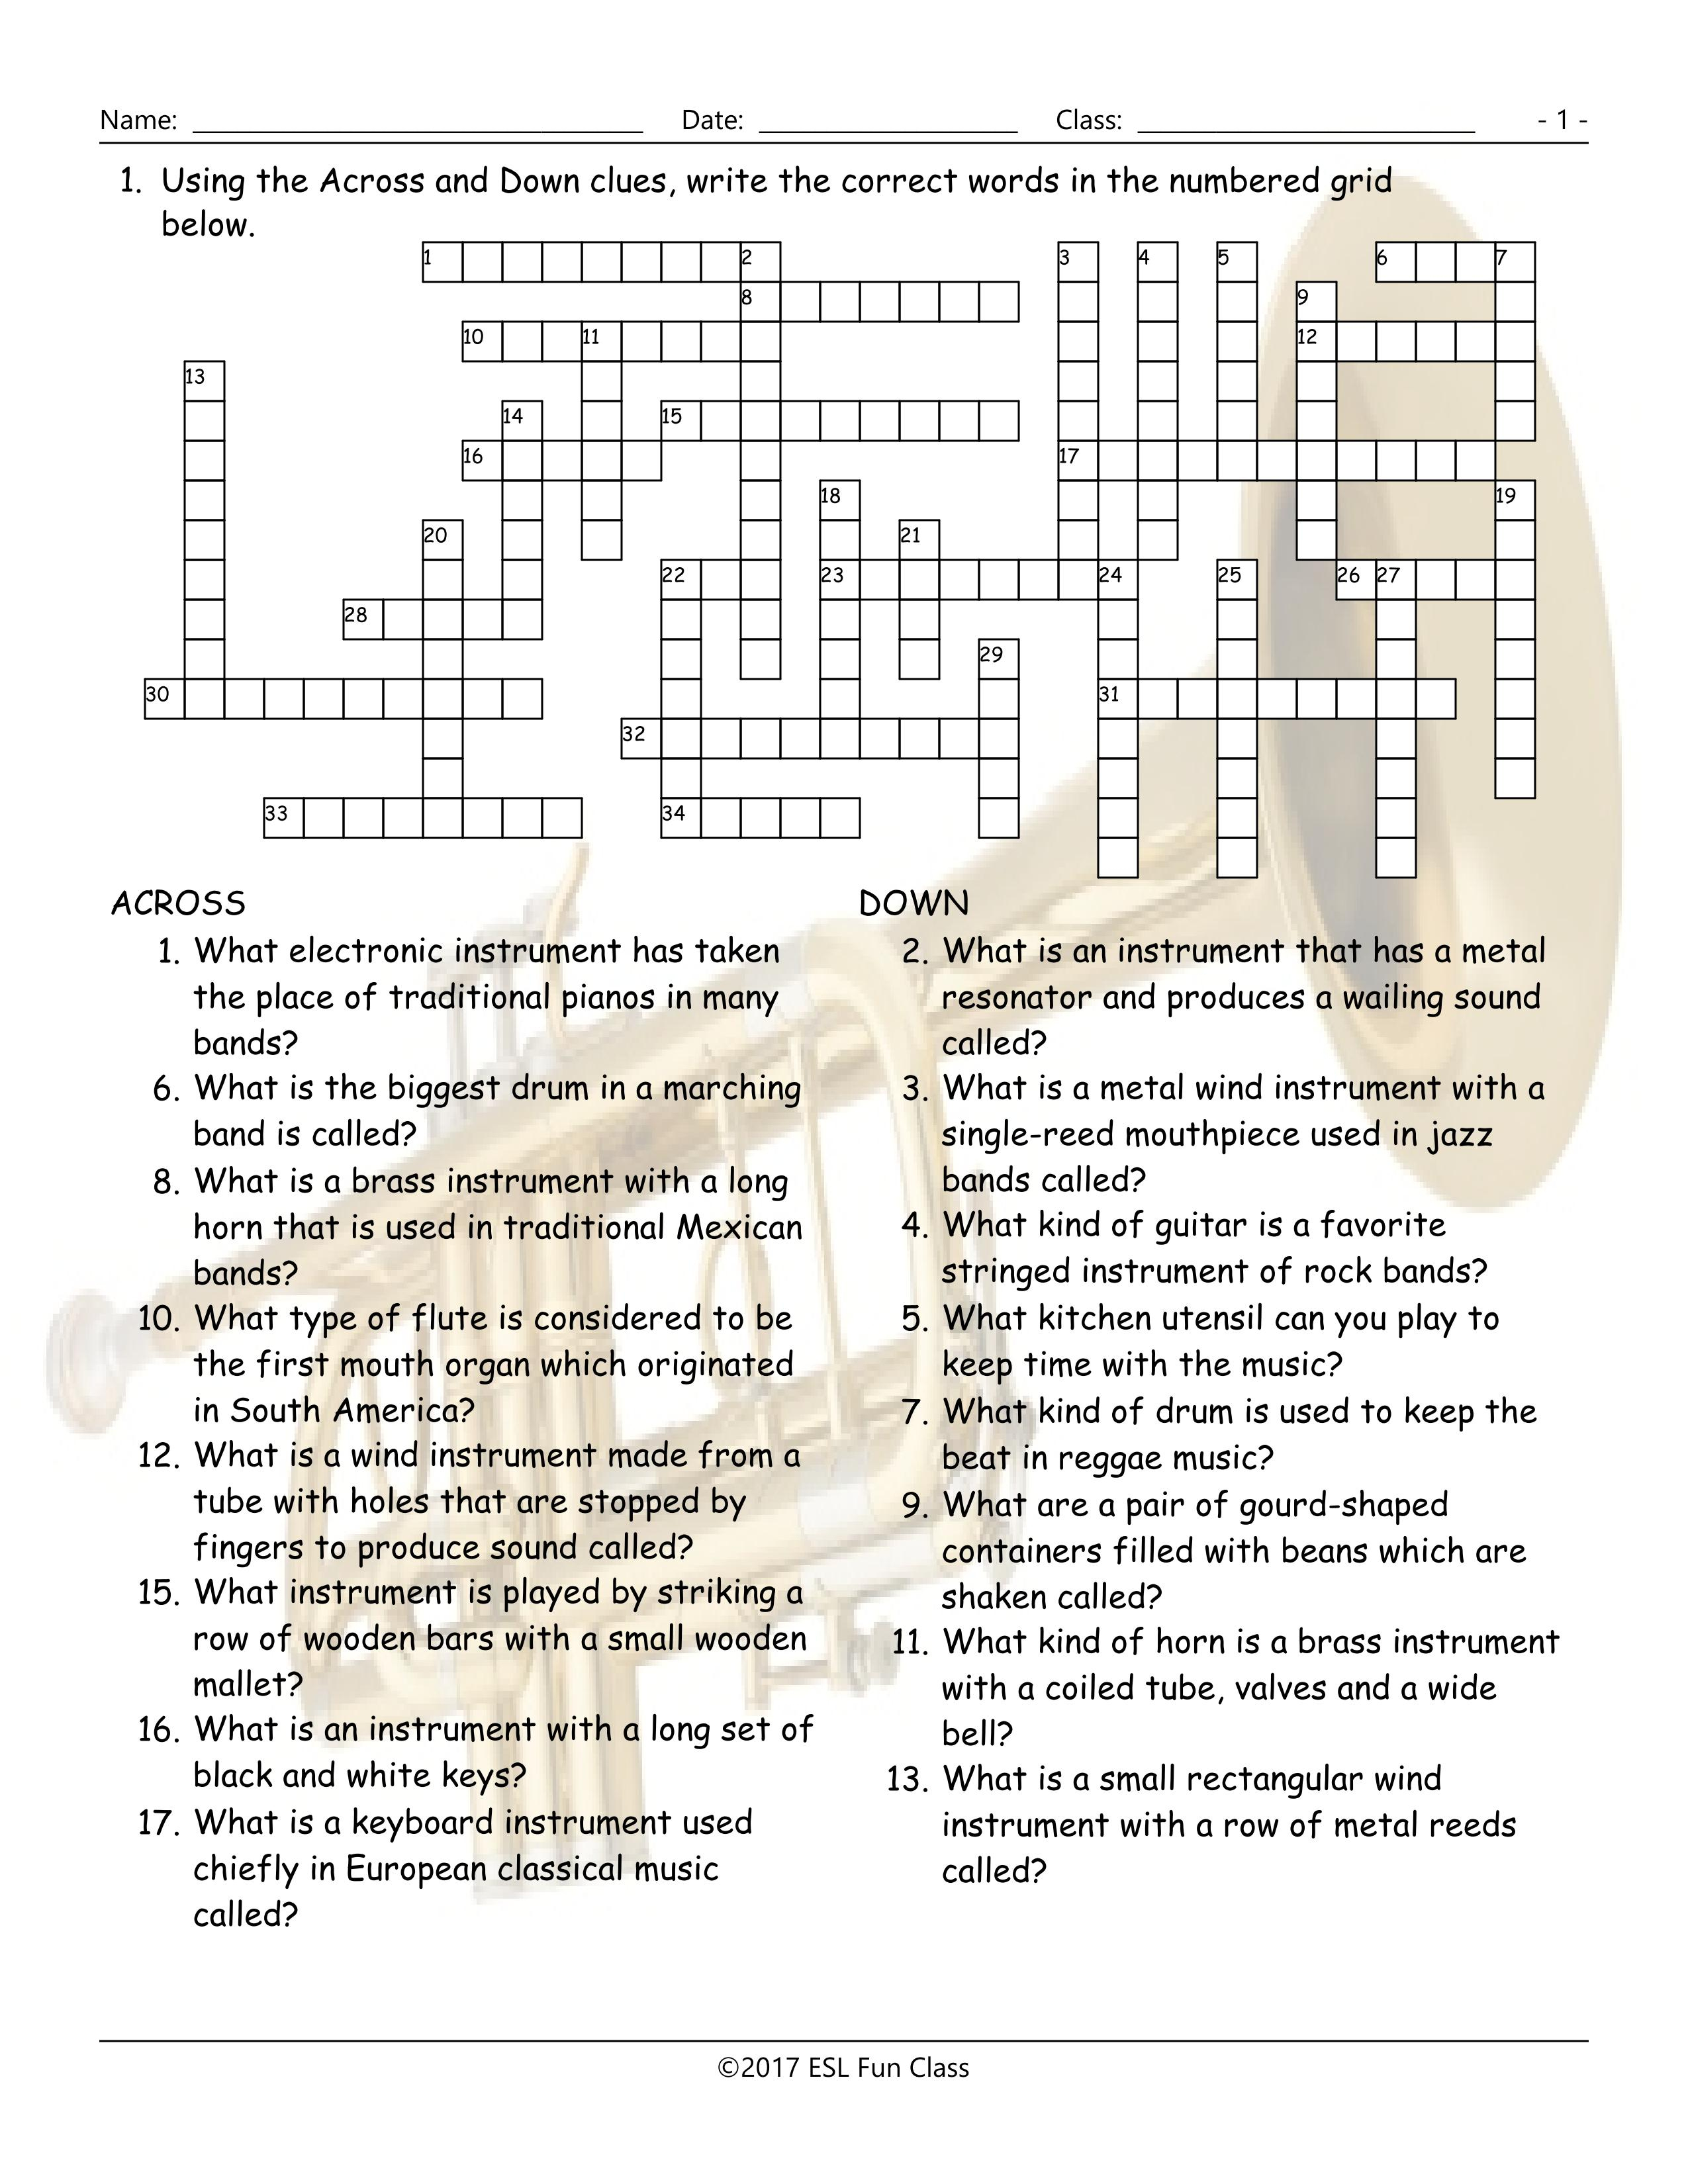 Musical Instruments Crossword Puzzle Worksheet-Esl Fun Games-Have Fun! - Printable Esl Crossword Worksheets